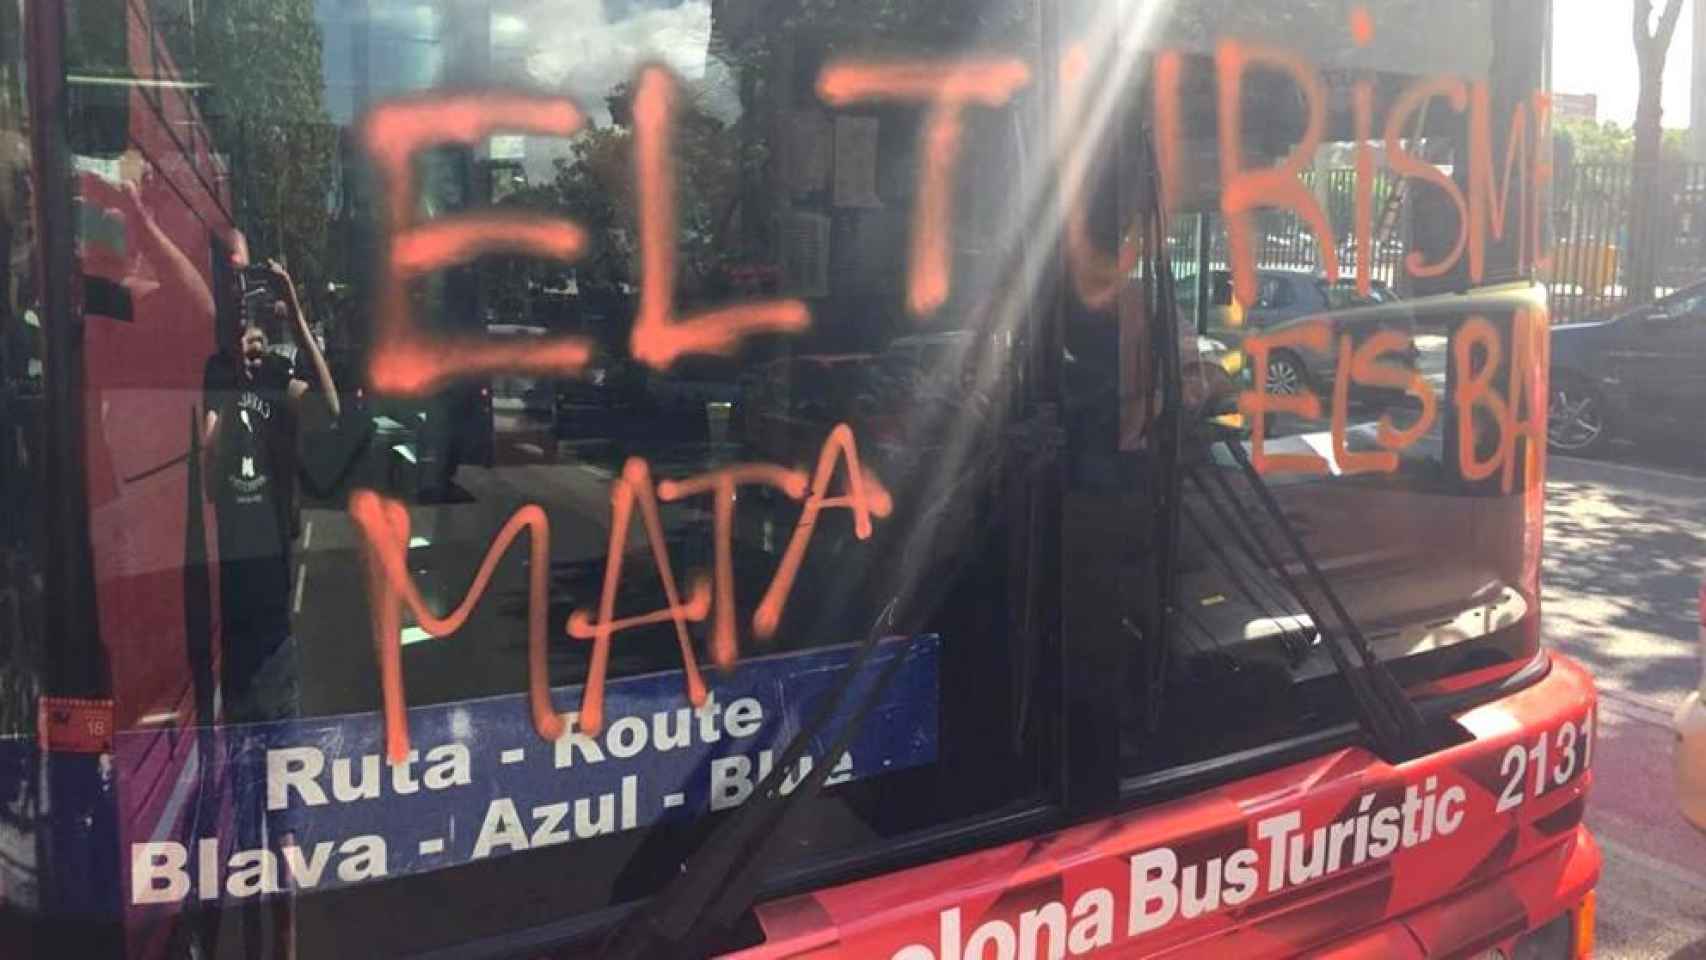 Arran, que se suele reunir en La Barraqueta, perpetró este ataque contra un bus turístico en Barcelona